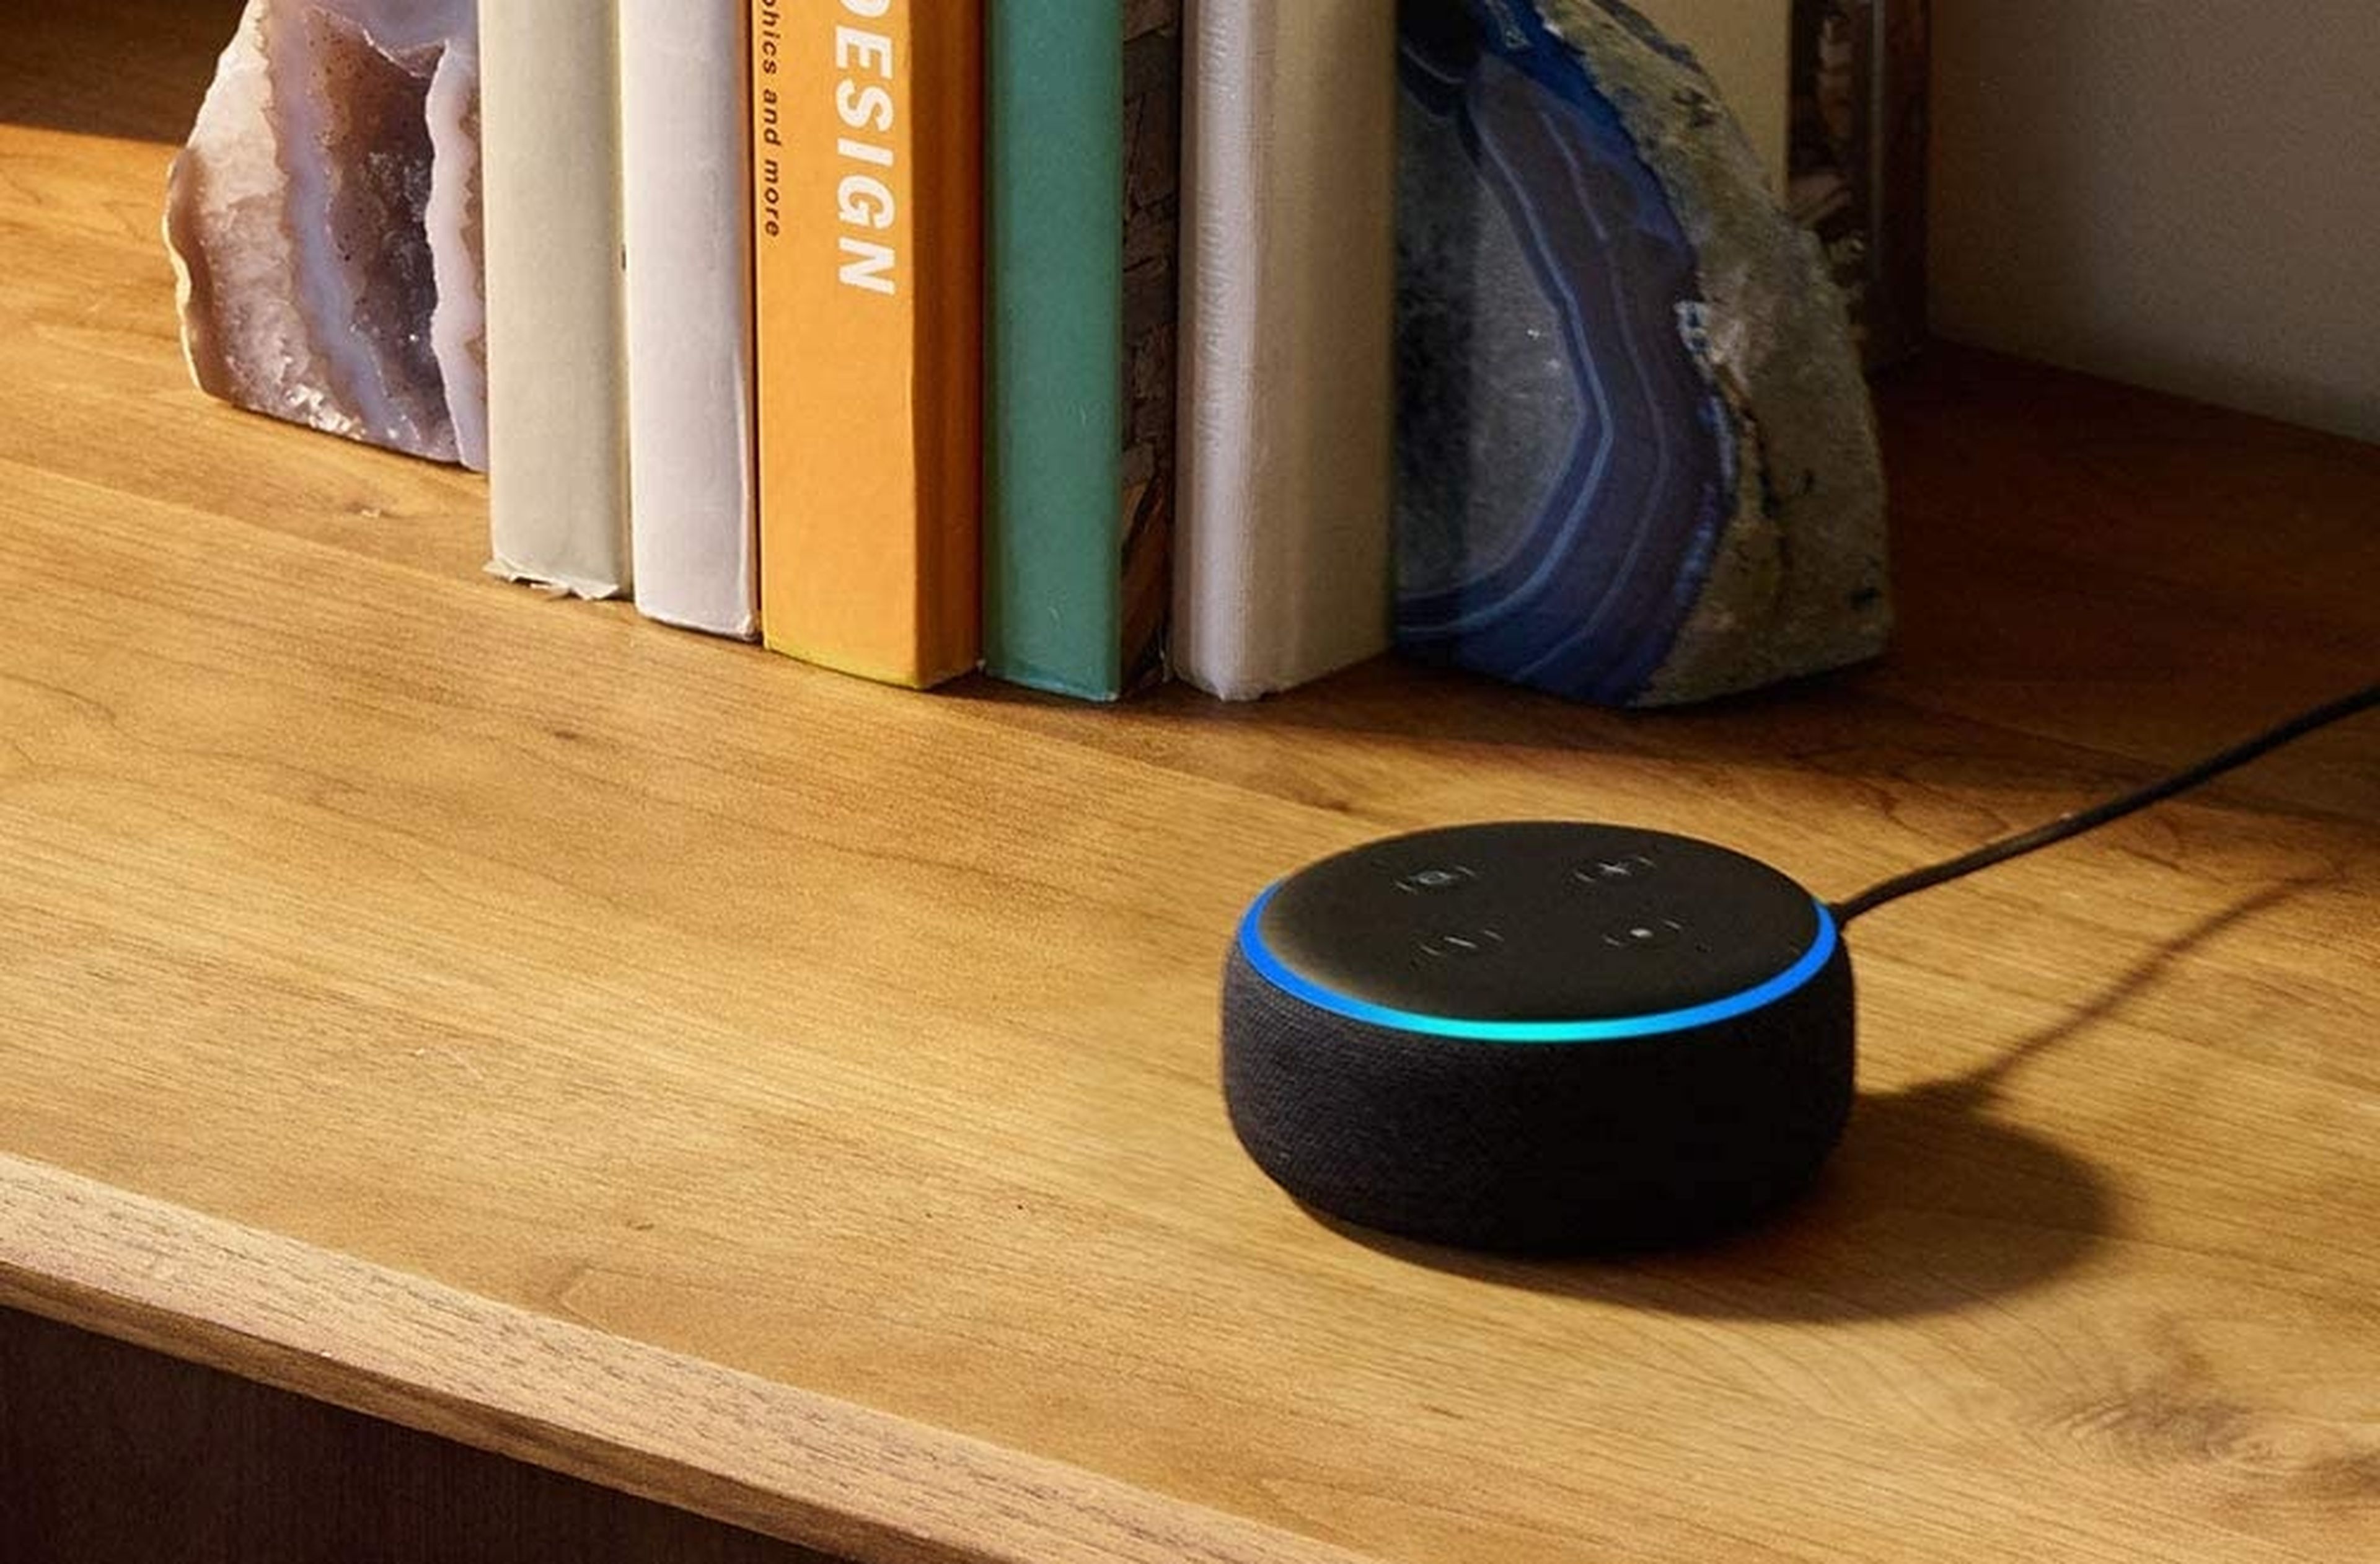 El Echo Dot más discreto a mitad de precio, por menos de 25 euros gran ocasión para estrenar un altavoz inteligente